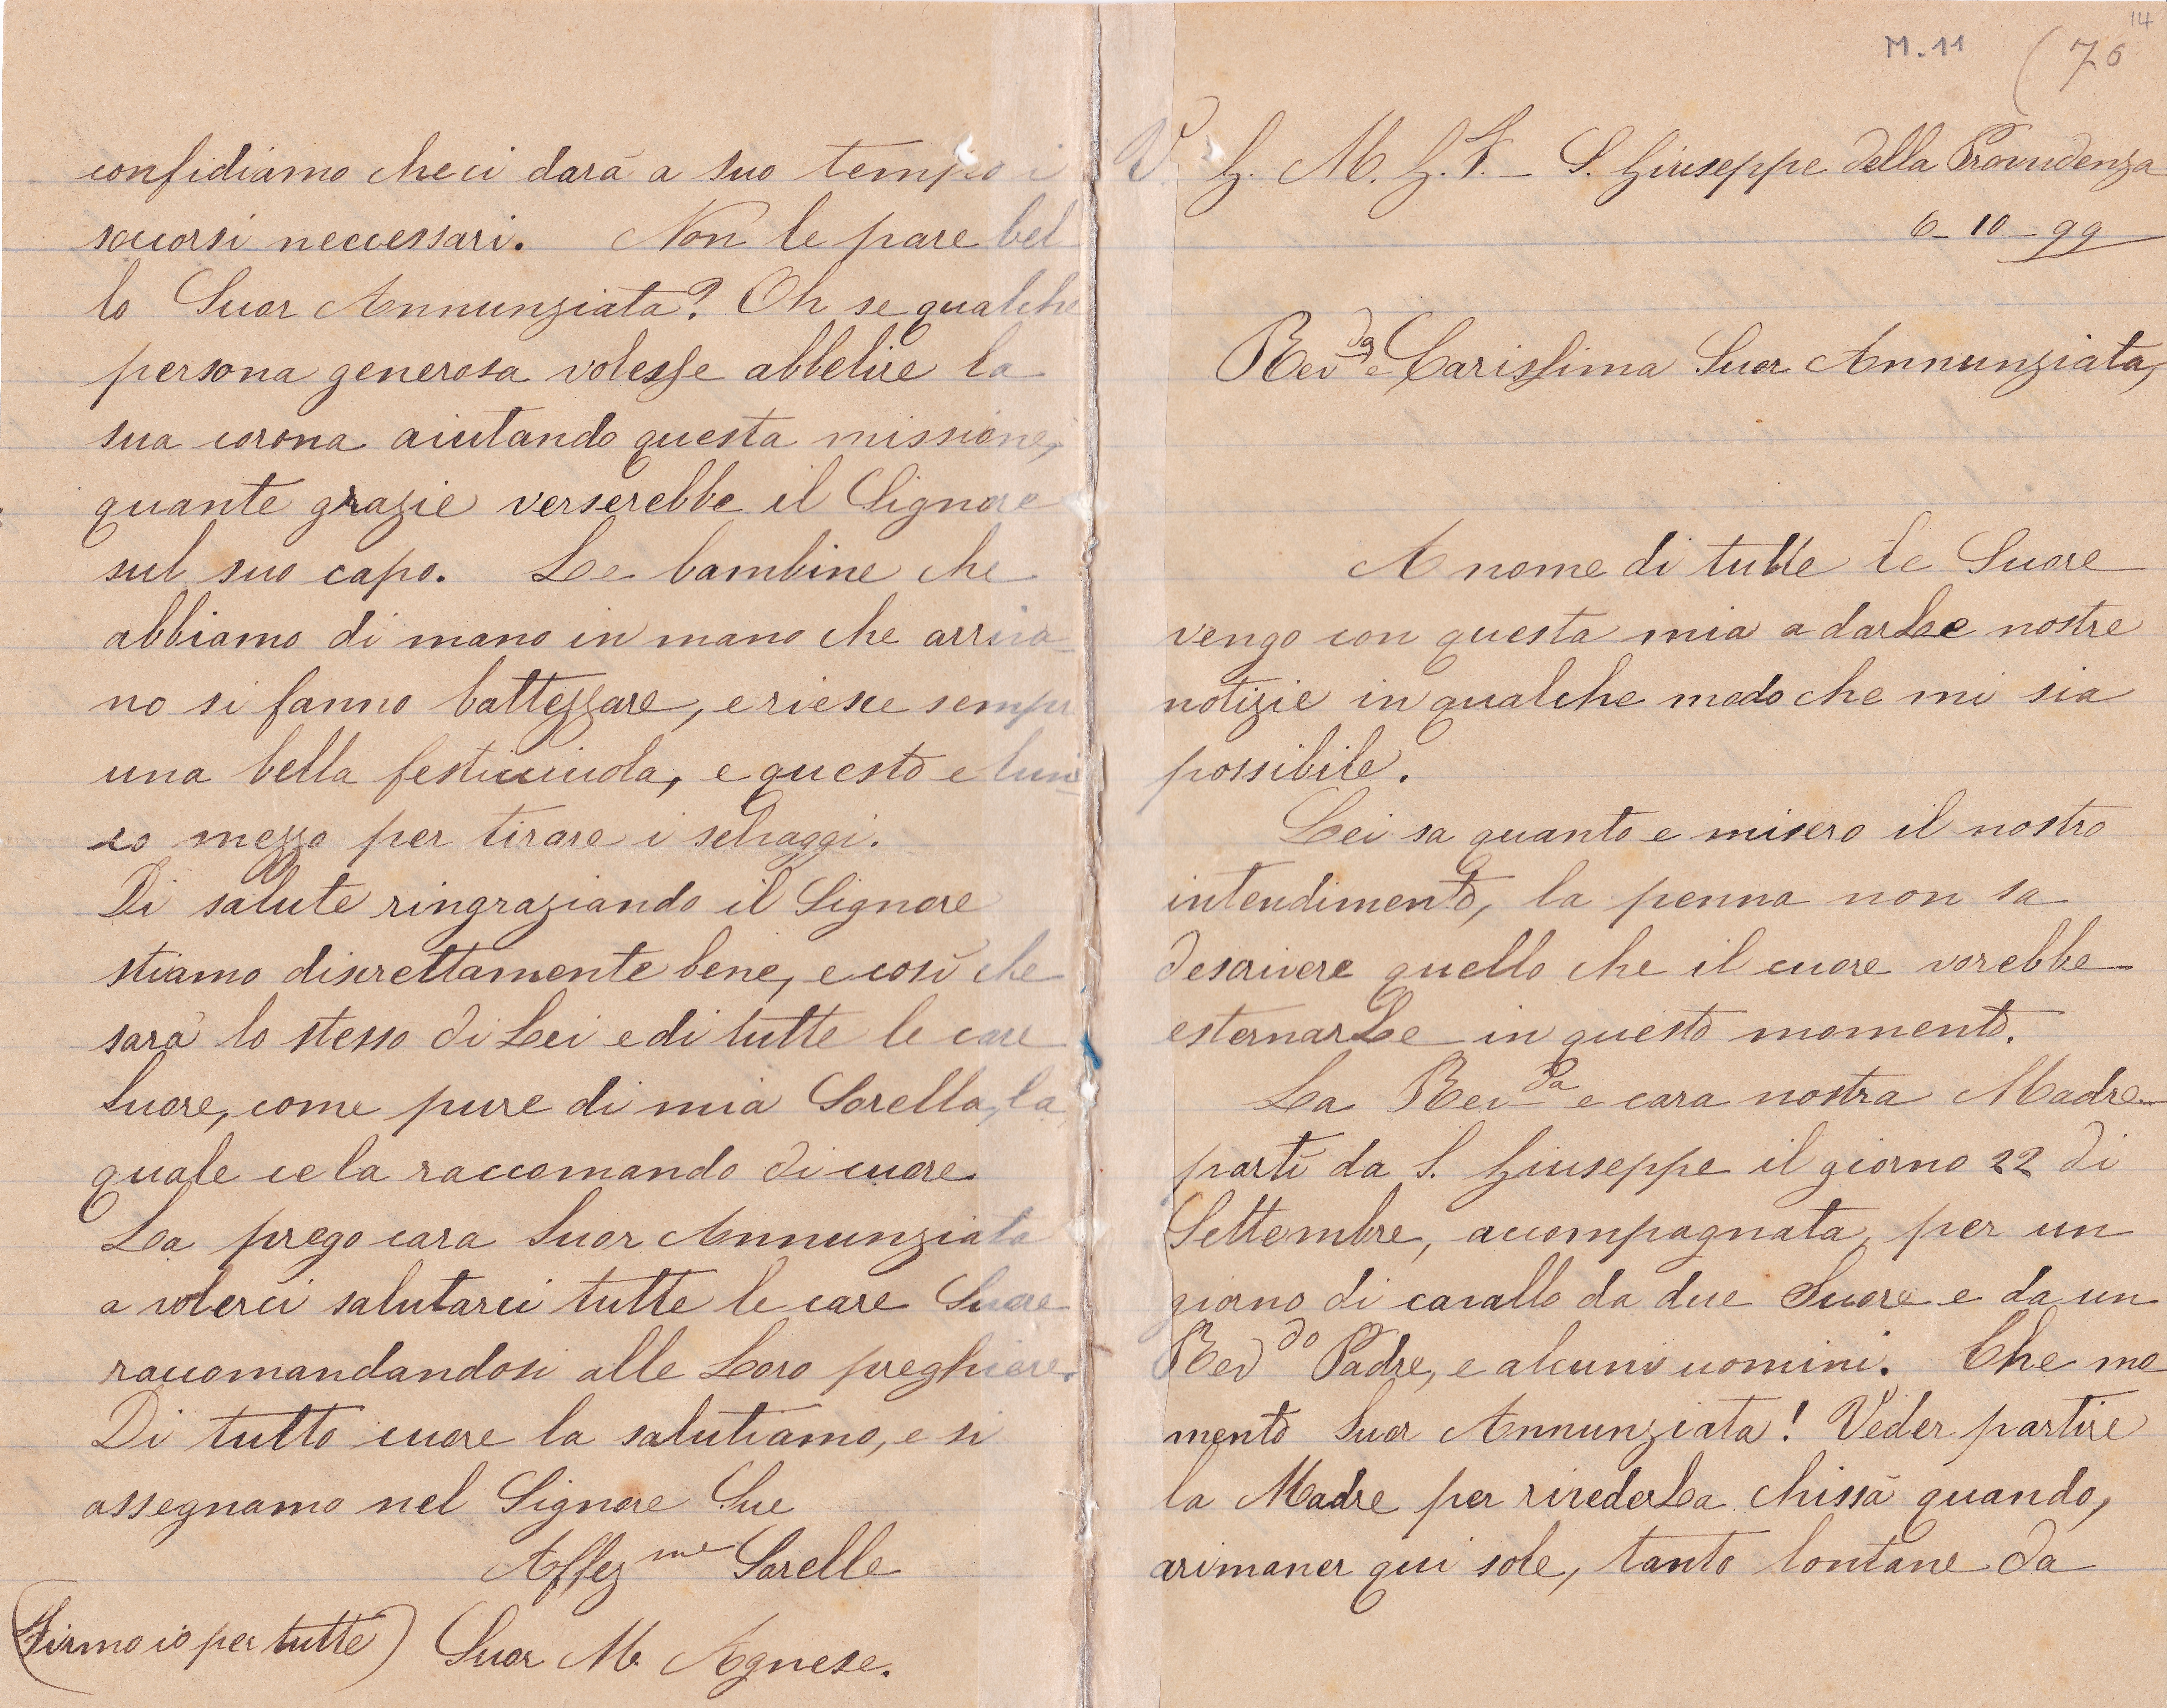 Lettera del 6 ottobre 1899 1^ parte